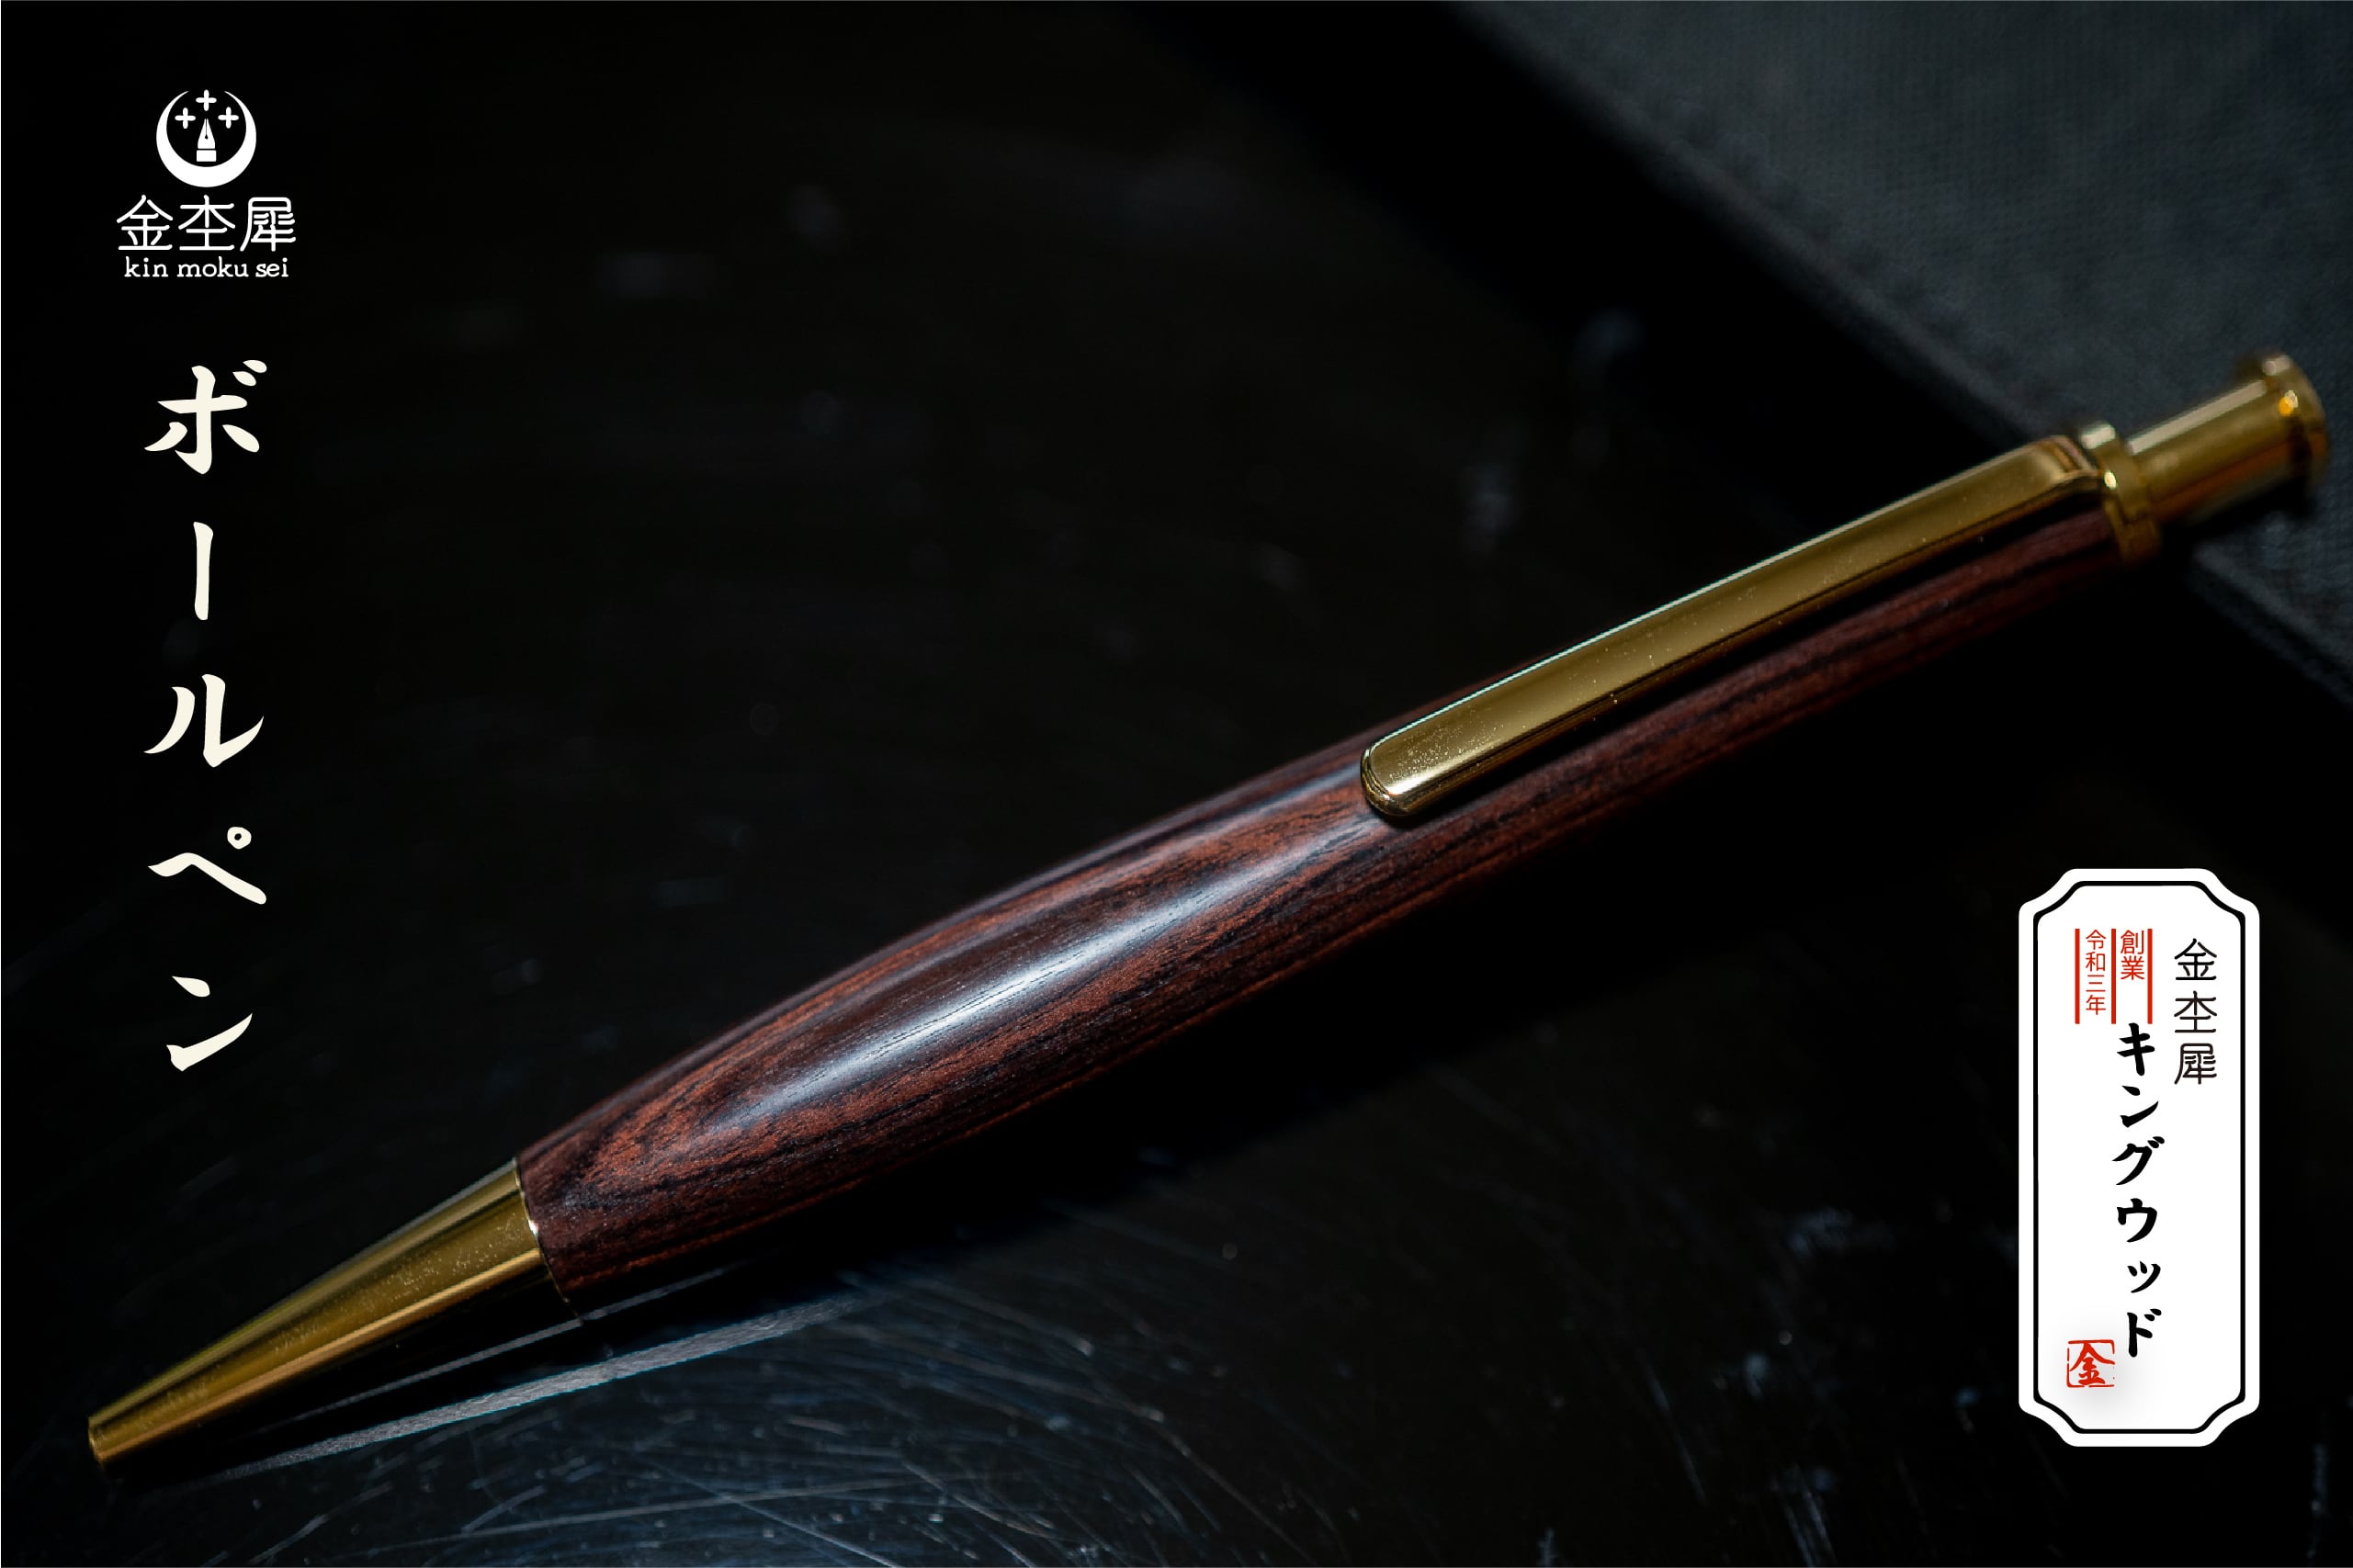 木軸ペン工房 金杢犀